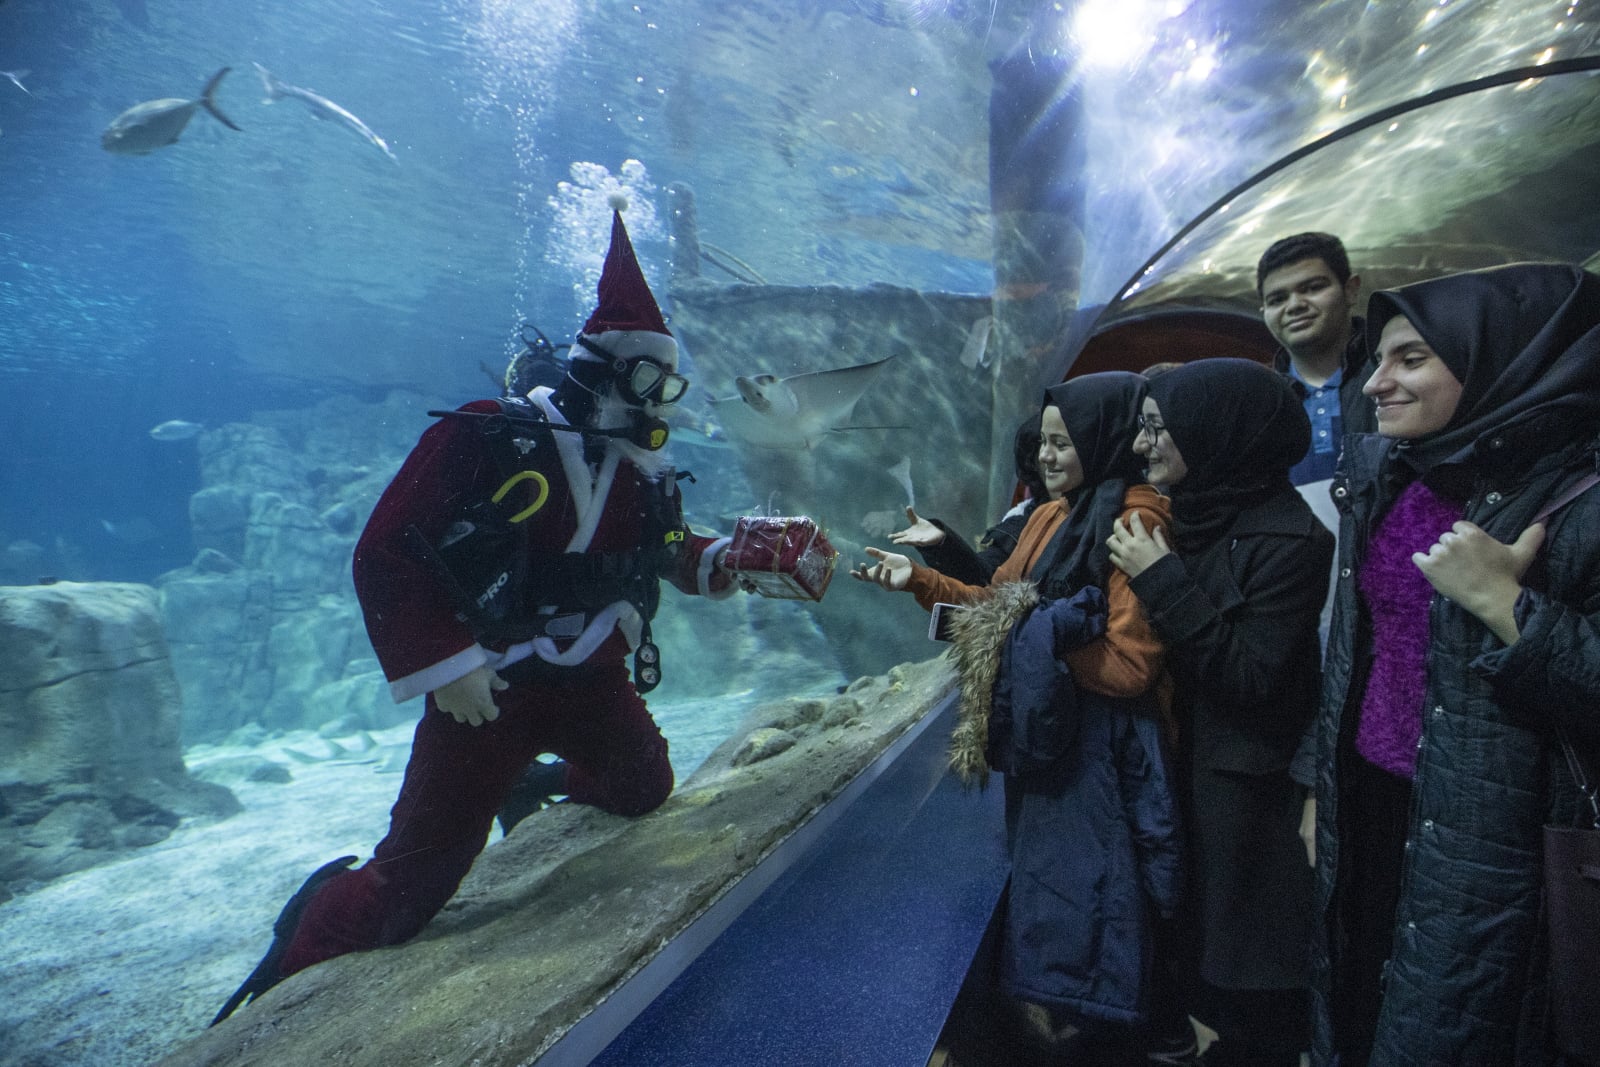 Nurek w świątecznym stroju pływa w akwarium z rekinami podczas podwodnego występu w tureckim Istanbule. Fot. PAP/EPA/SEDAT SUNA